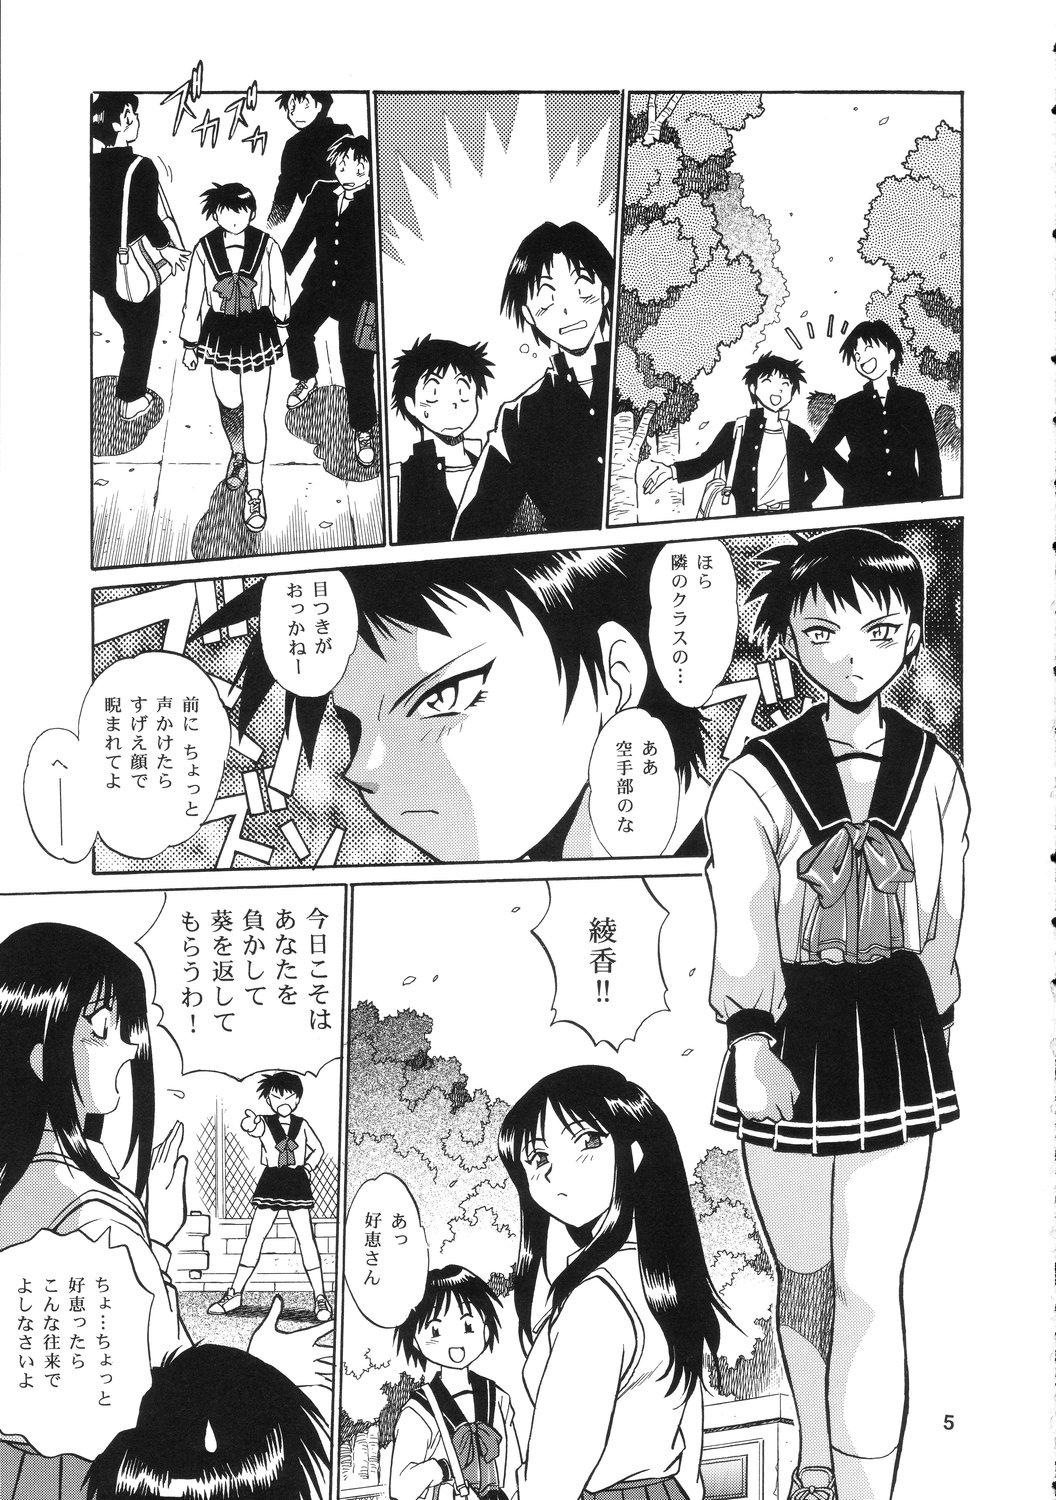 Topless AYAKA & SAKASHITA - To heart Pegging - Page 4